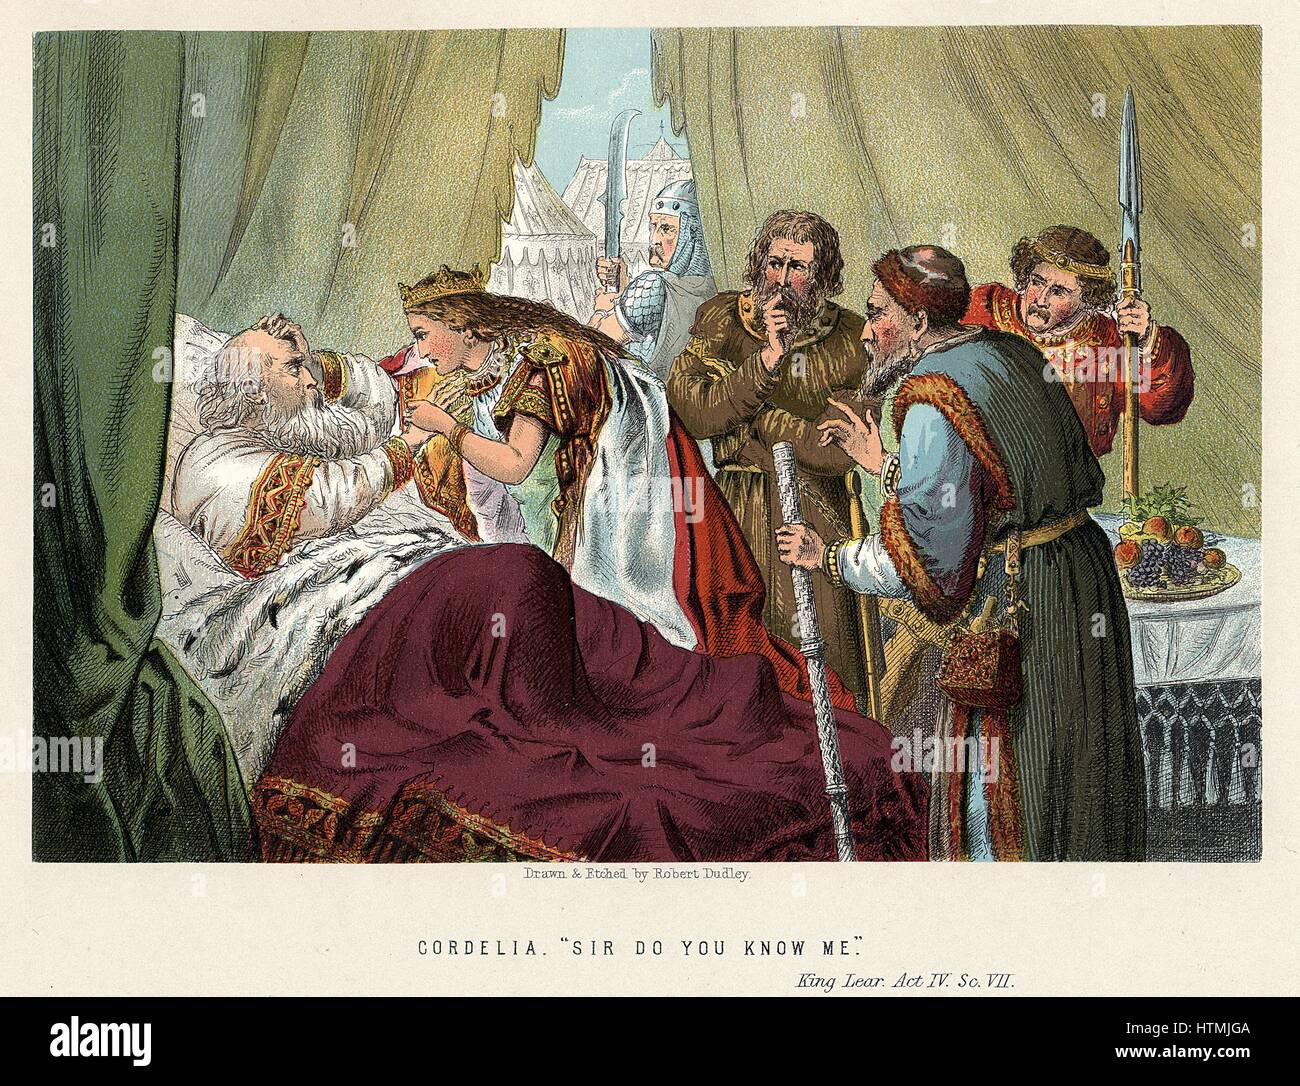 Shakespeares "König Lear" uraufgeführt c1605 Lear, verraten von Töchtern Goneril und Regan und von Wut, Ohnmacht und Misshandlungen, getröstet durch jüngste Tochter Cordelia verwechselt. Handeln Sie IV, Sc.VII. Farblitho c1858 Stockfoto